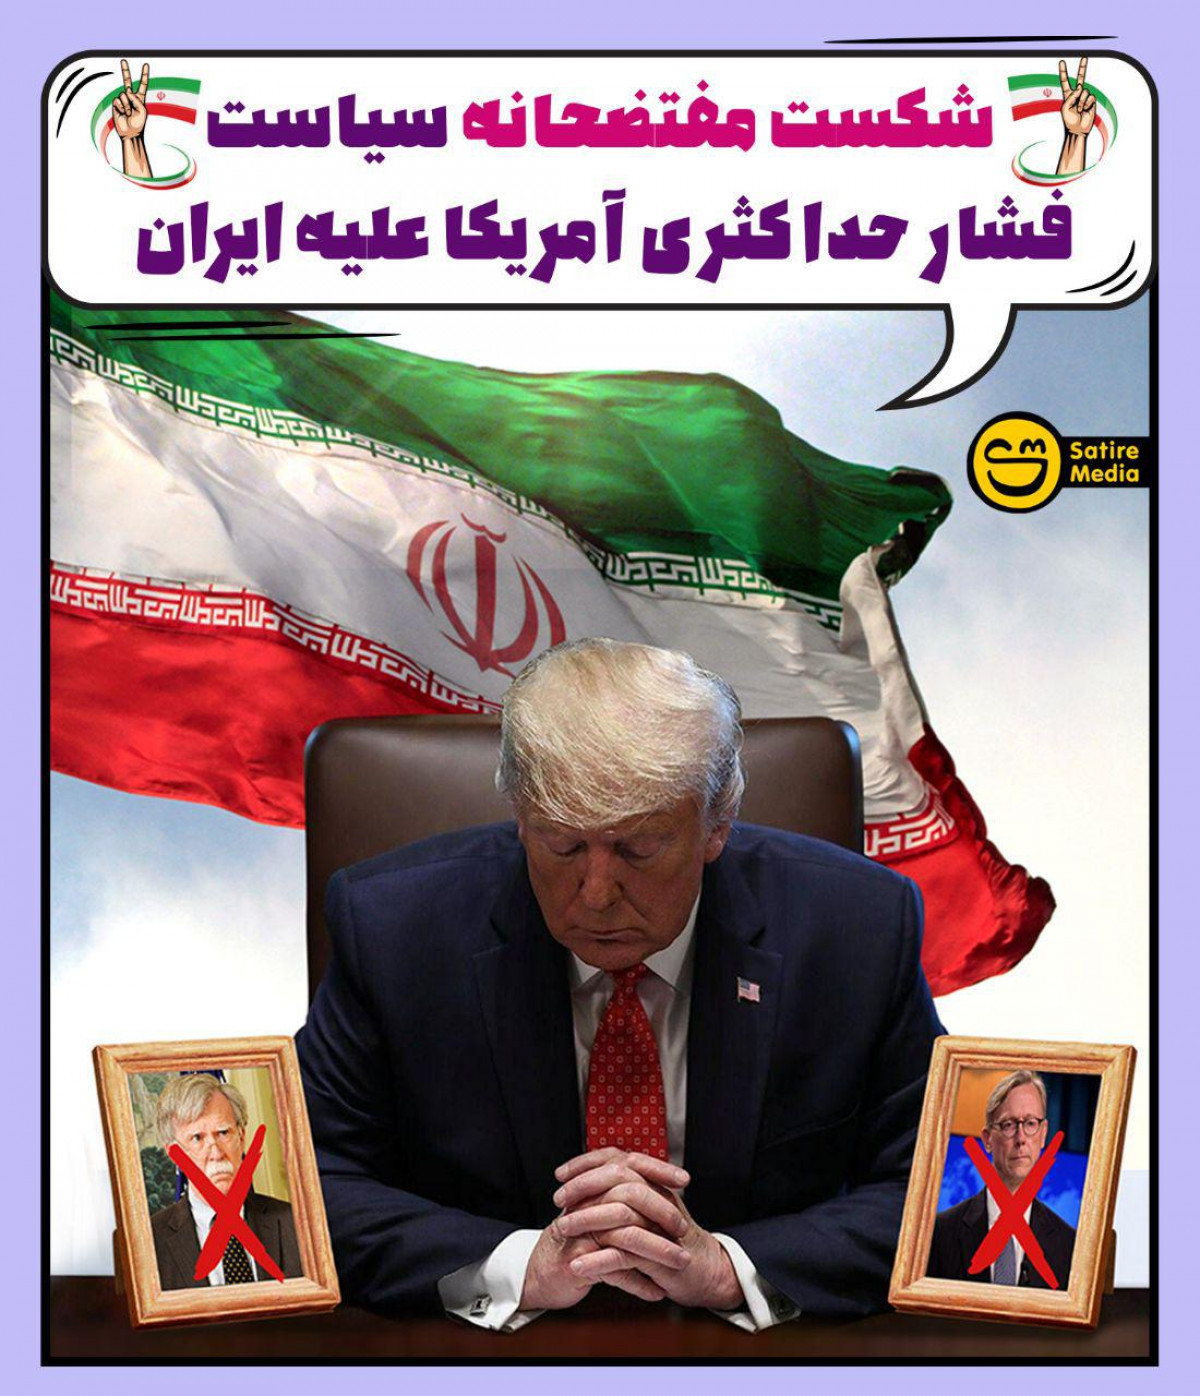 پوستر: شکست مفتضحانه سیاست فشار حداکثری آمريکا عليه ايران